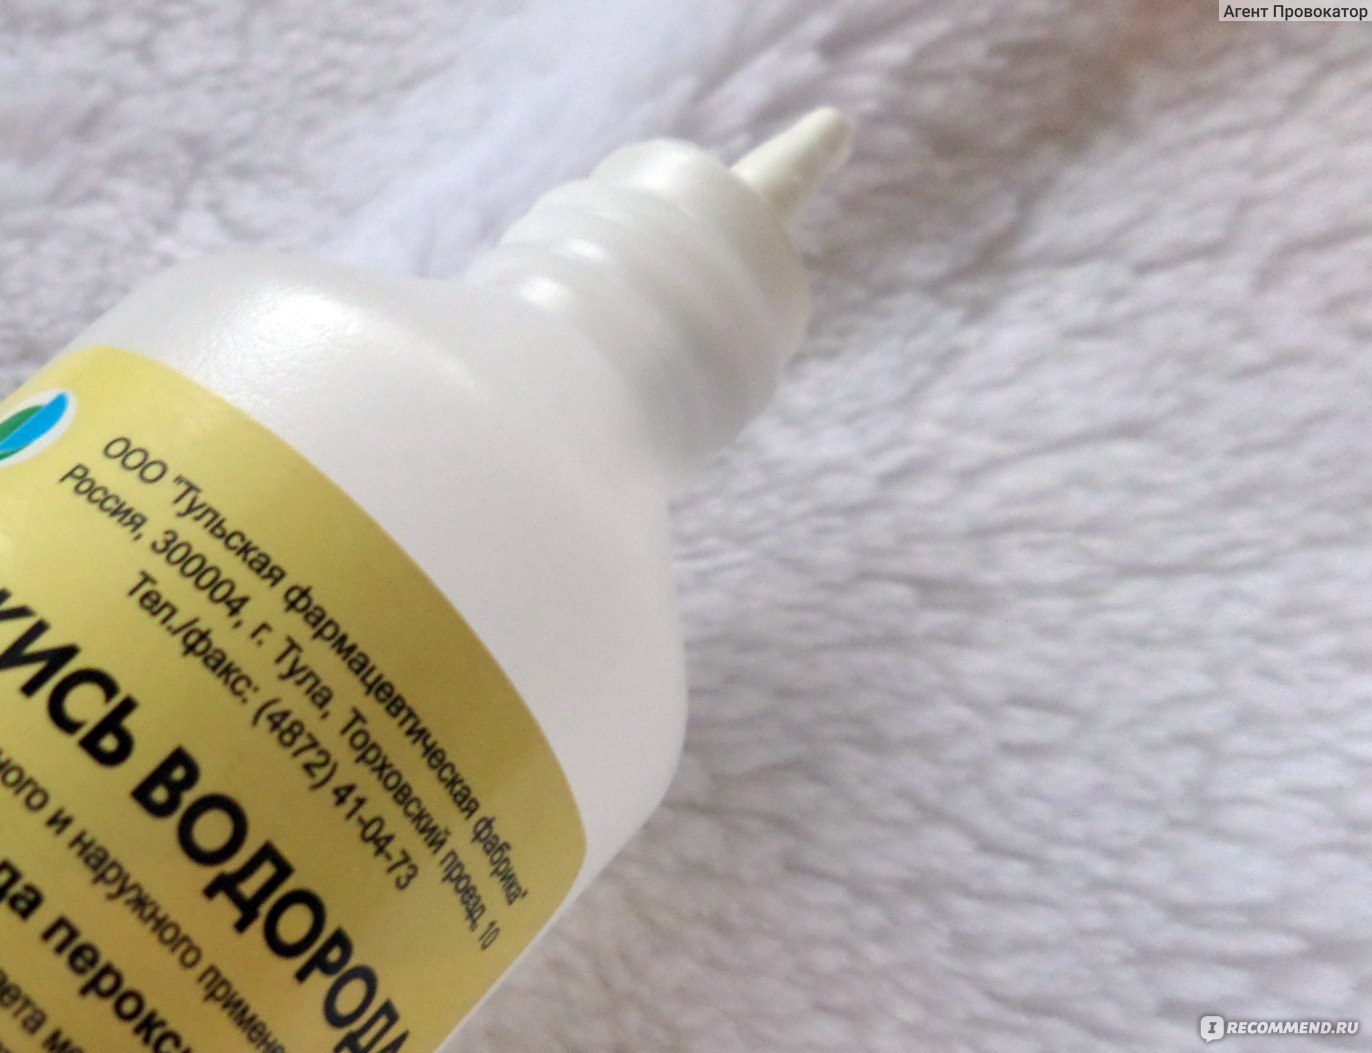 Осветлить волосы перекисью водорода в домашних условиях рецепты с фото пошагово